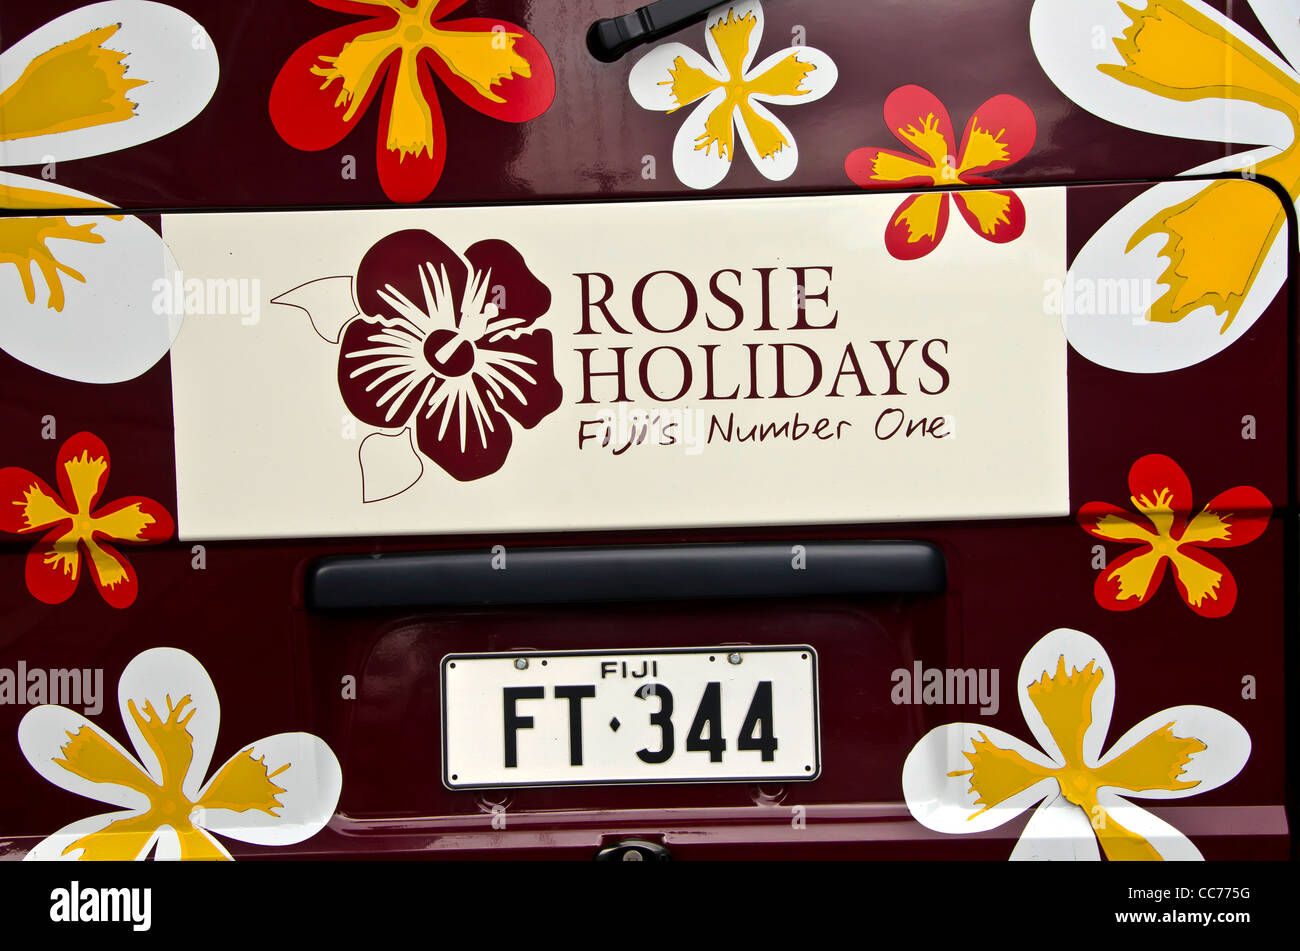 Nadi Fidji libre de signer pour Rosie vacances tourisme company à l'arrière de l'van Banque D'Images